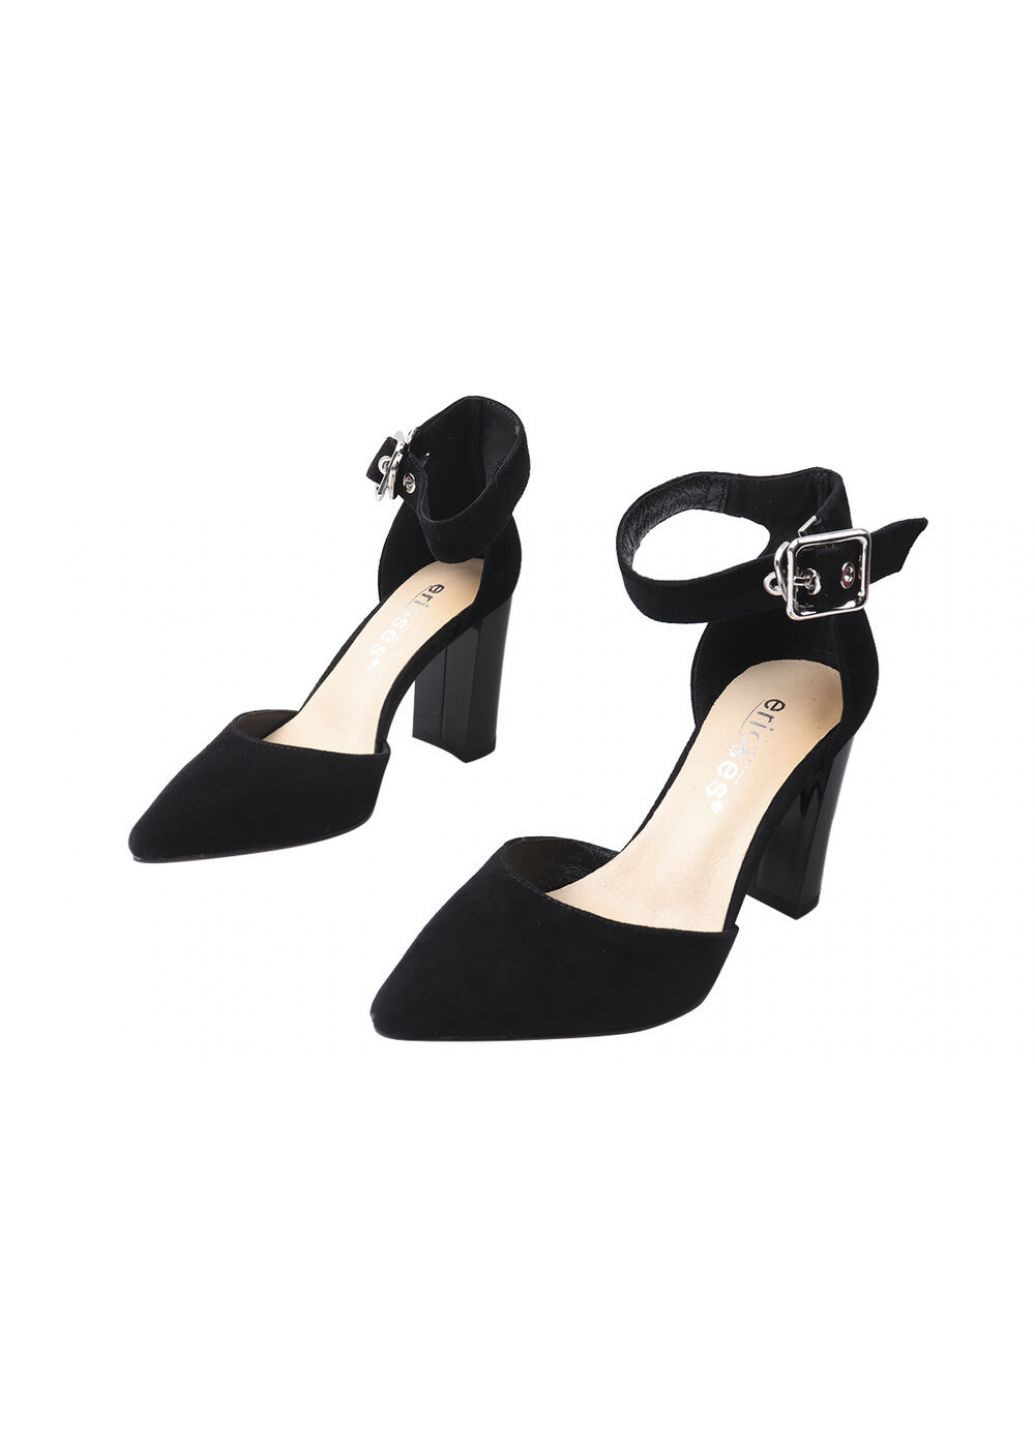 Туфли женские из натуральной замши, на большом каблуке, с закрытой пятой, цвет черный, Erisses